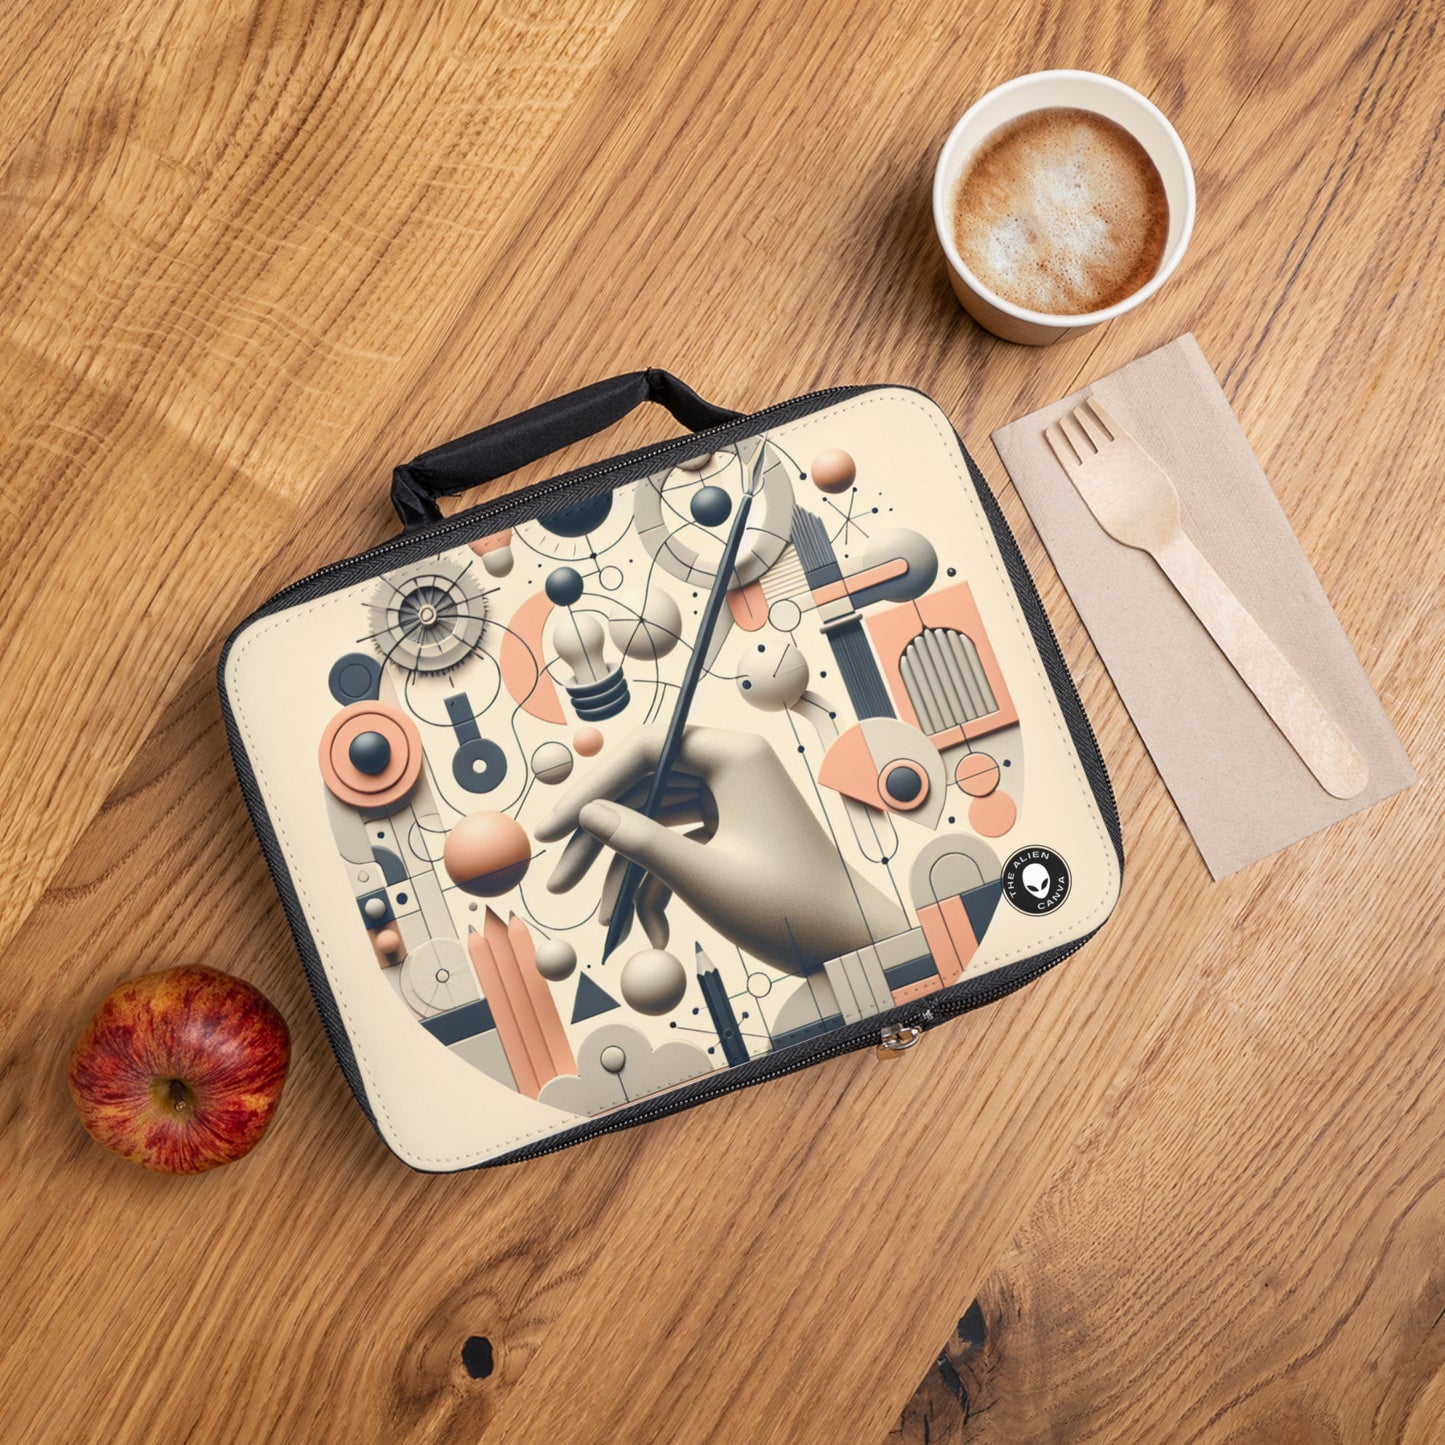 "Tech-Nature Fusion: An Artistic Exploration"- The Alien Lunch Bag Conceptual Art